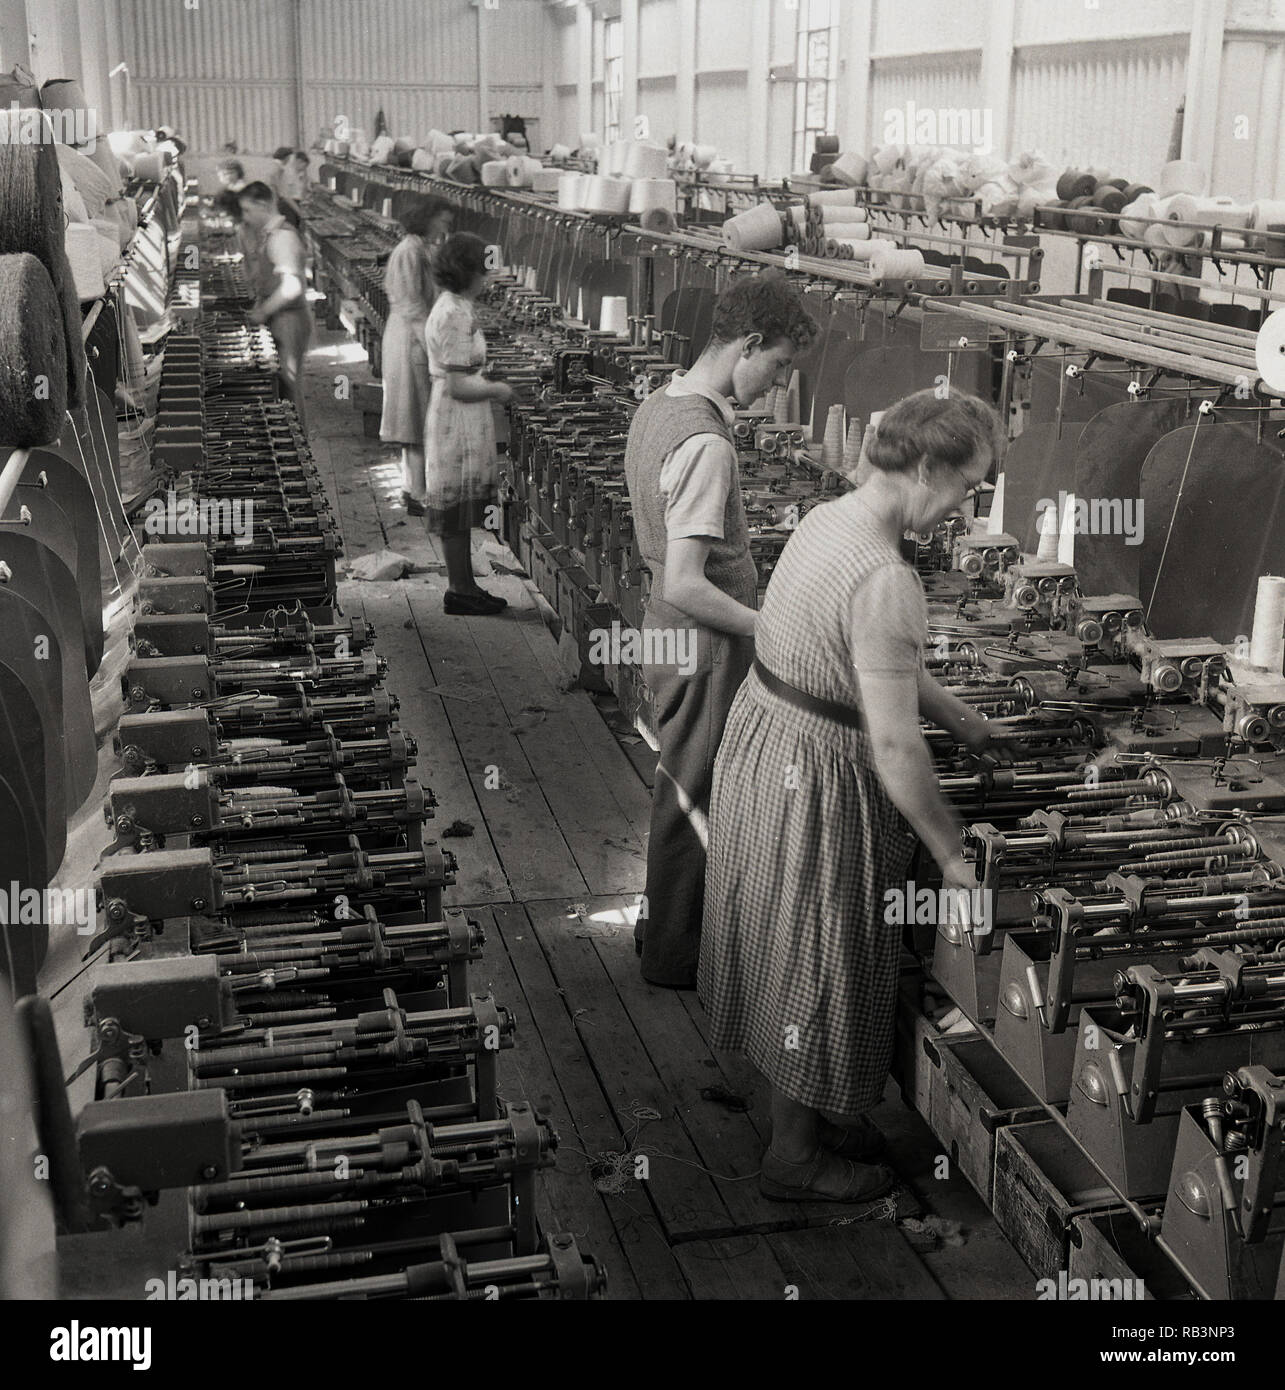 Degli anni Cinquanta, mulino tessile o in fabbrica, i lavoratori sulla linea di produzione mediante tessitura meccanica telai, Irlanda del Nord. In questa epoca, il settore tessile è stato un importante datore di lavoro e quasi tutti i villaggi e città in Irlanda del Nord aveva un mulino o la fabbrica coinvolti nell'industria. Foto Stock